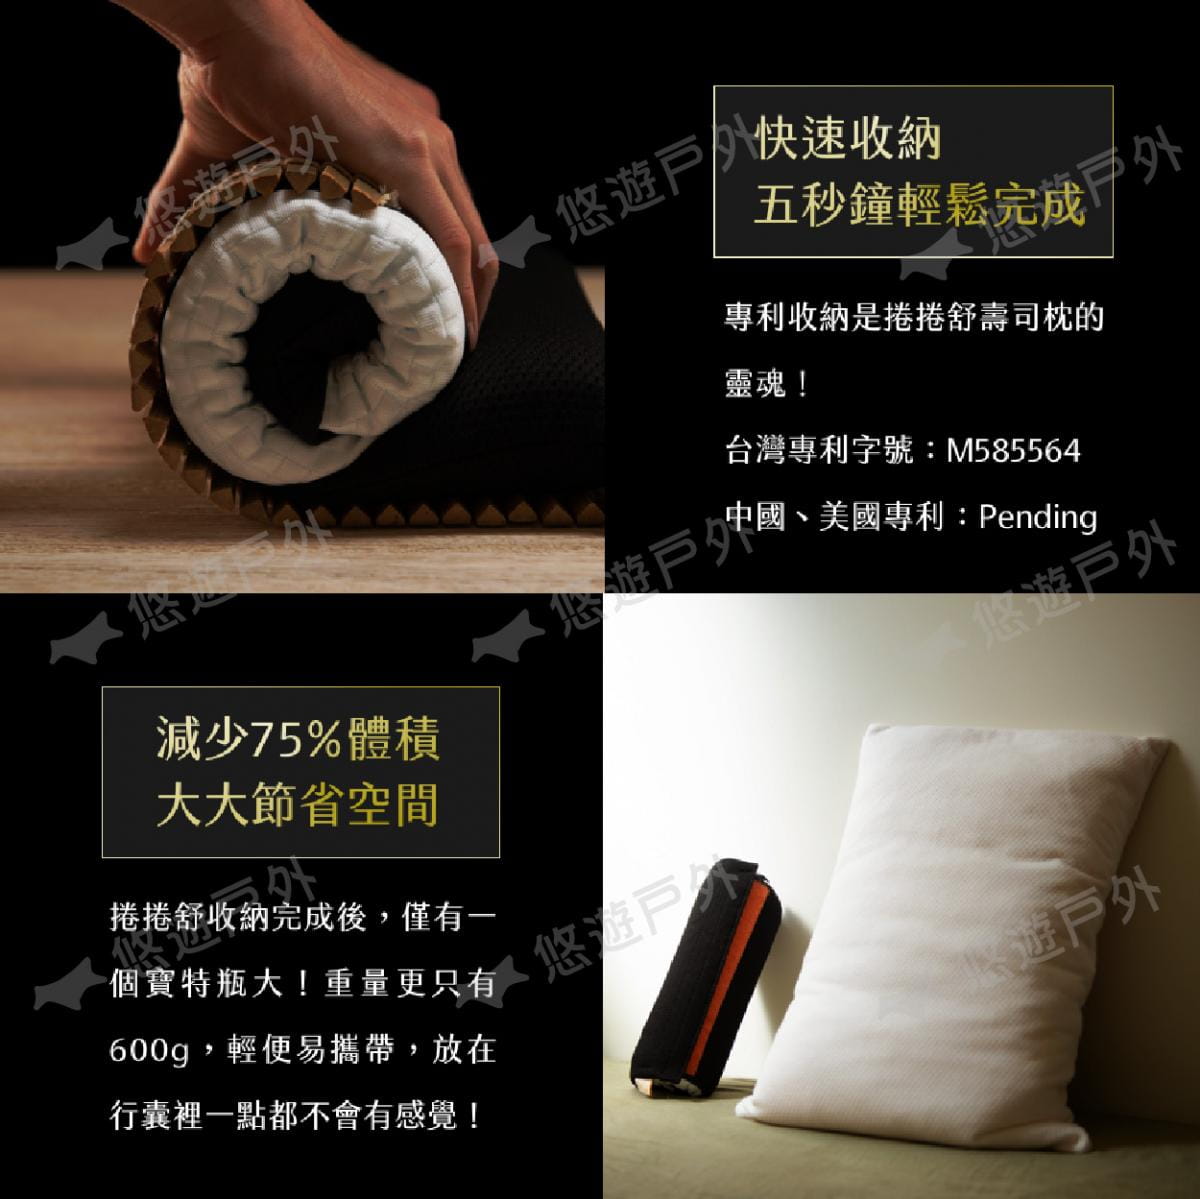 【捲捲舒】壽司枕Premium麵包型 夢幻旗艦款 (悠遊戶外) 2